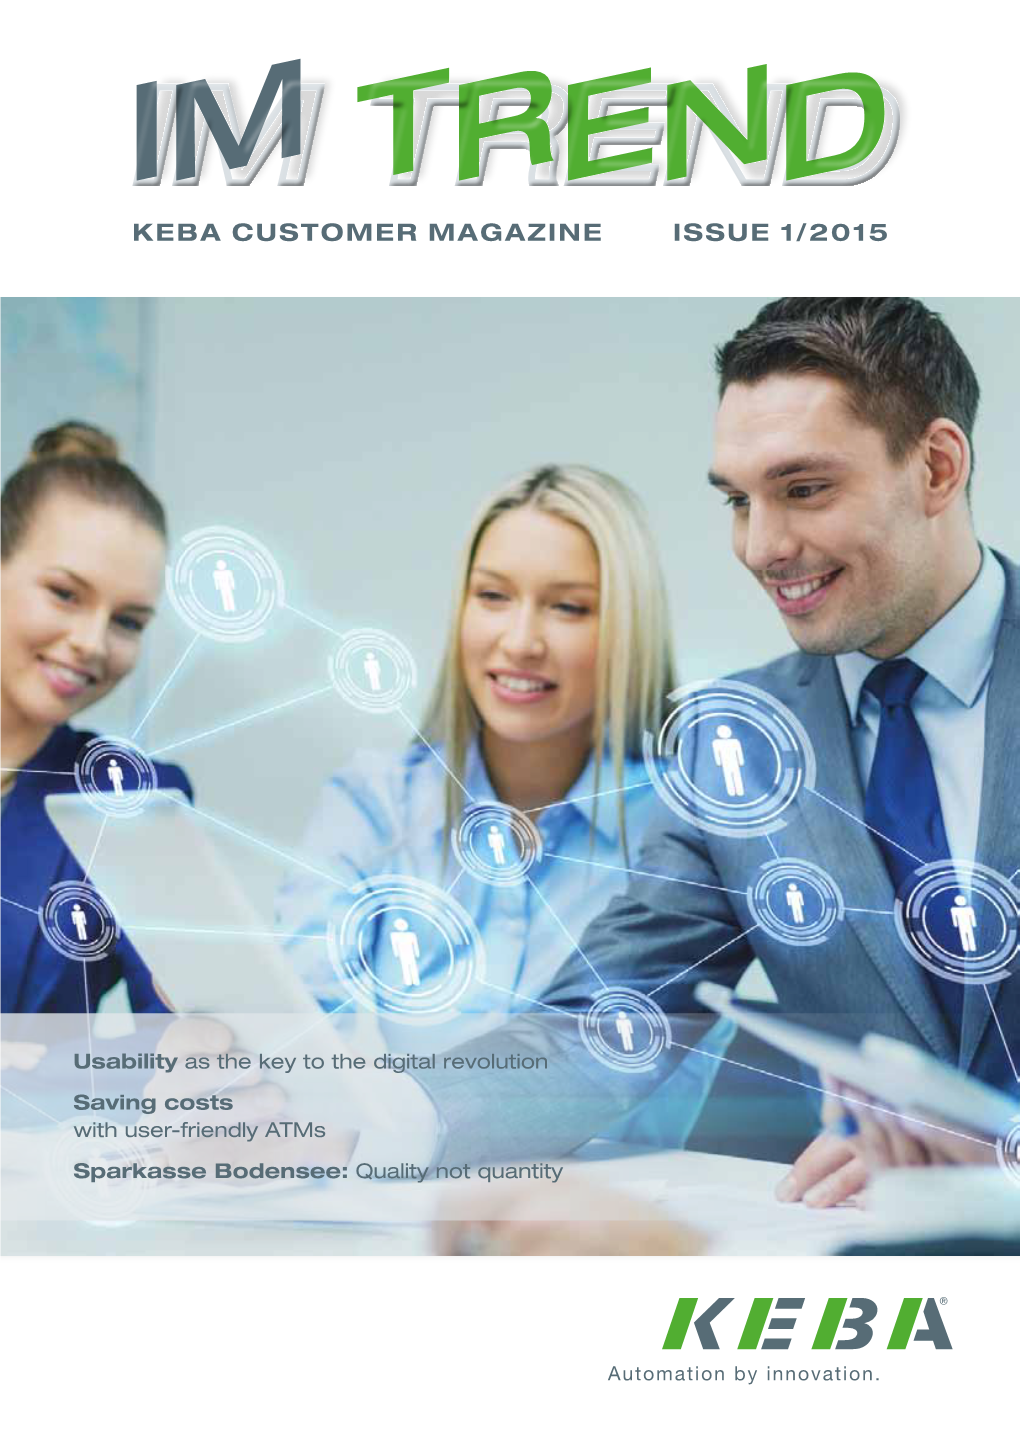 Keba Customer Magazine Issue 1/2015